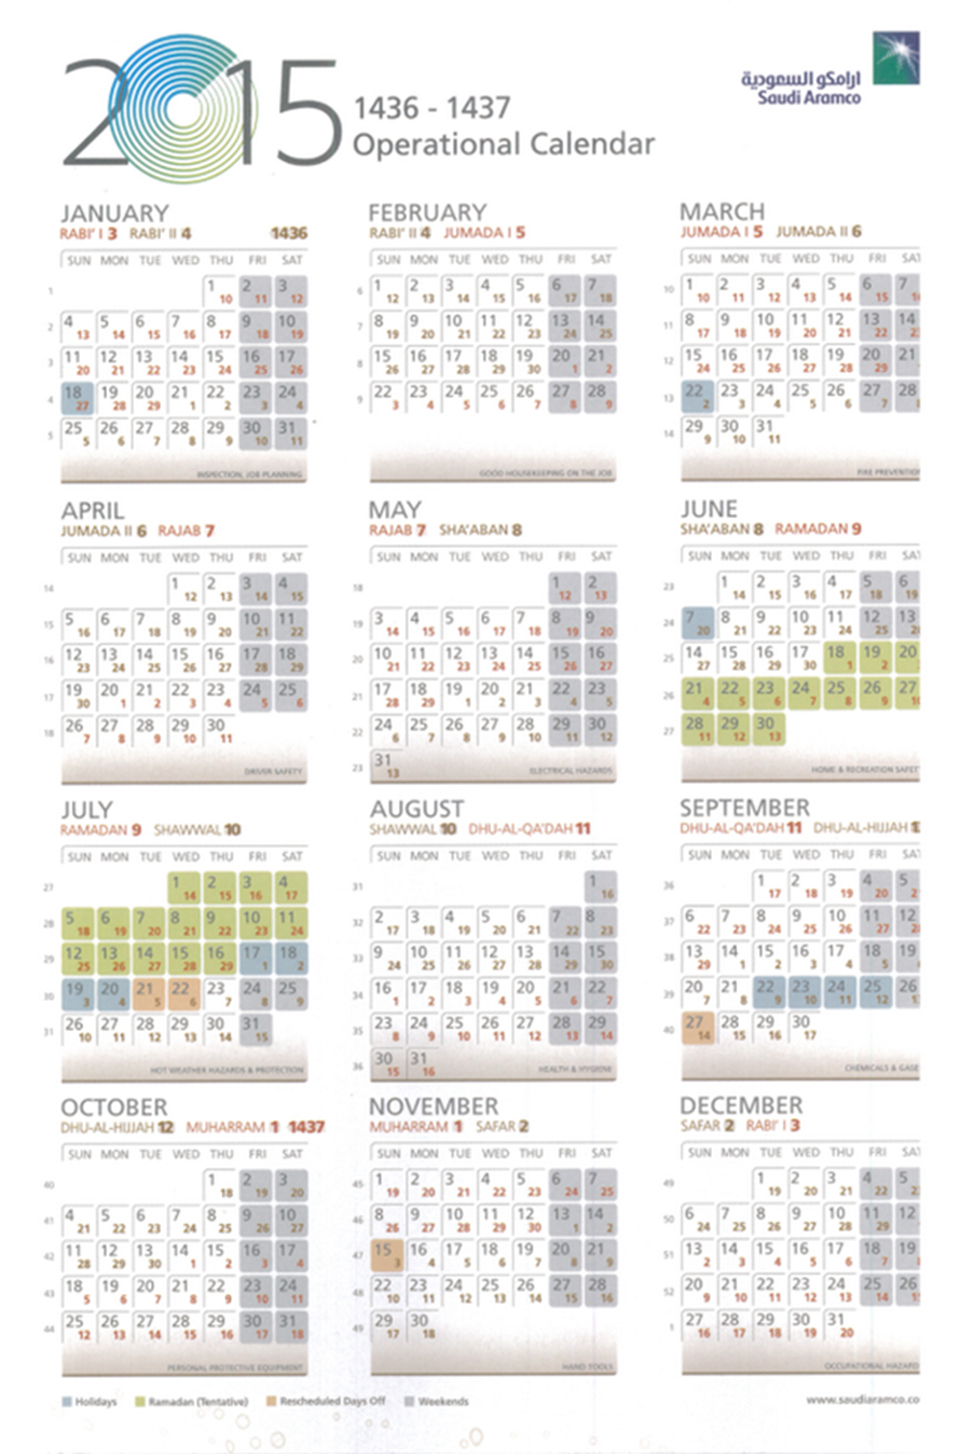 Aramco Calendar 2020 Pdf - Calendario 2019